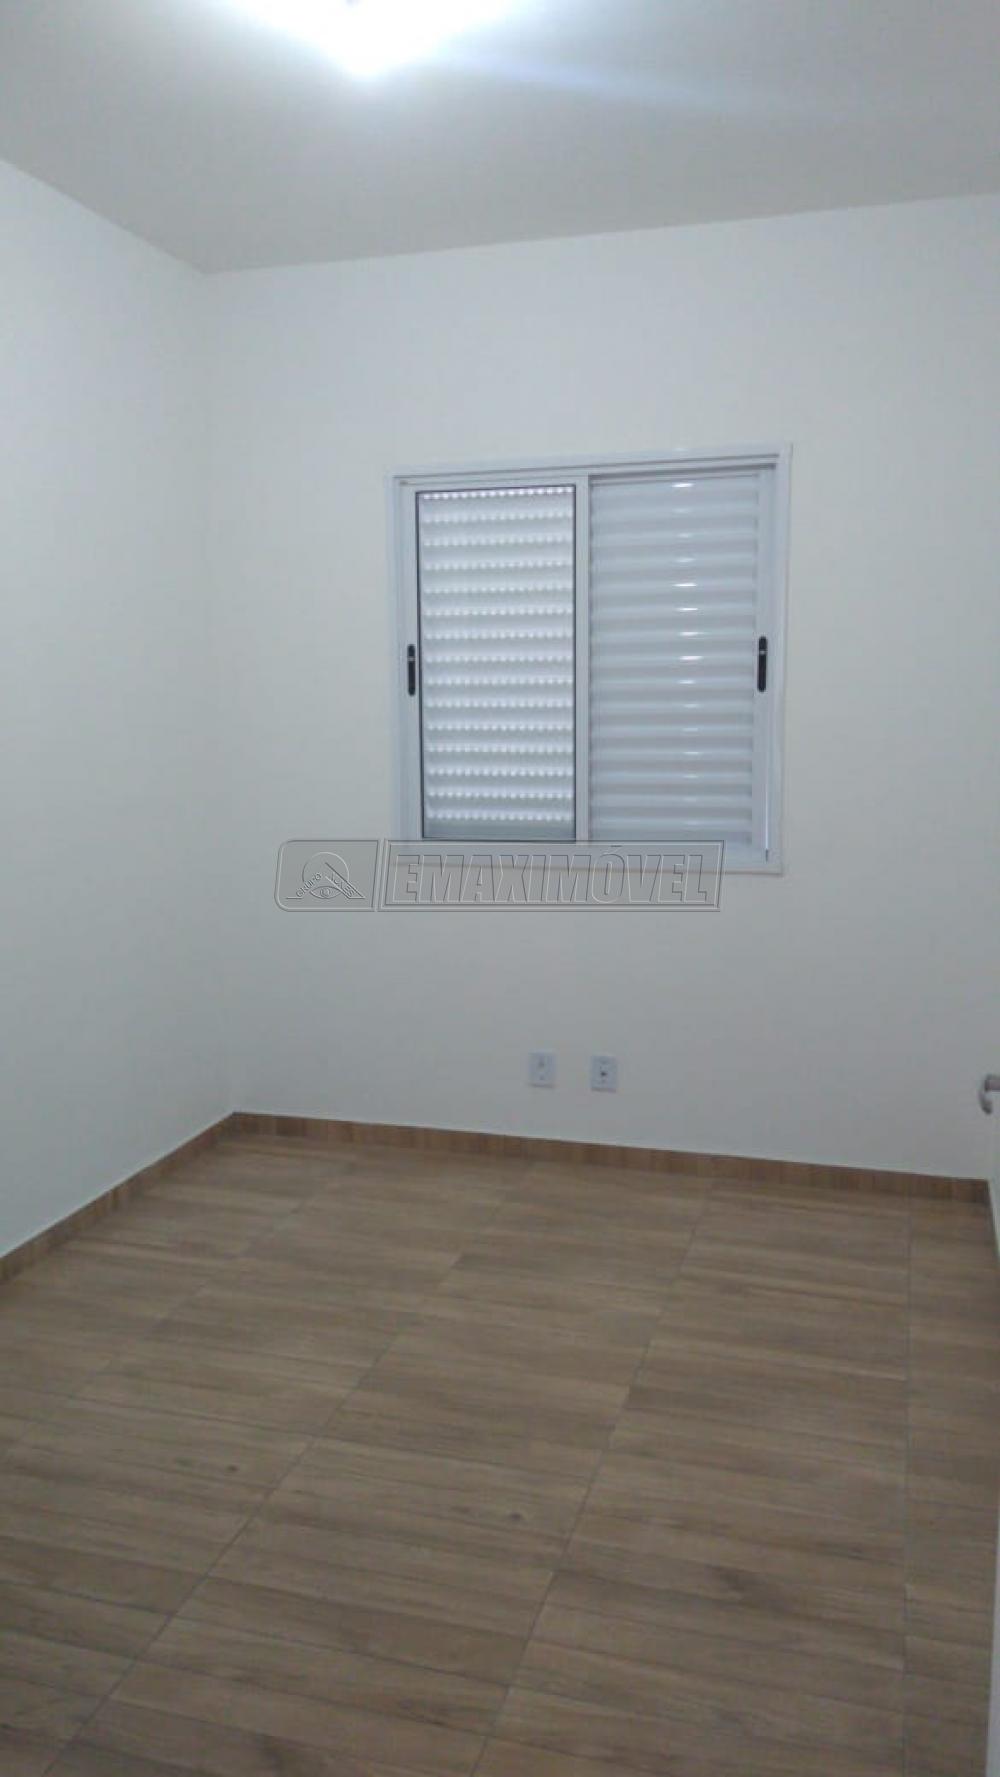 Comprar Apartamento / Padrão em Sorocaba R$ 250.000,00 - Foto 14